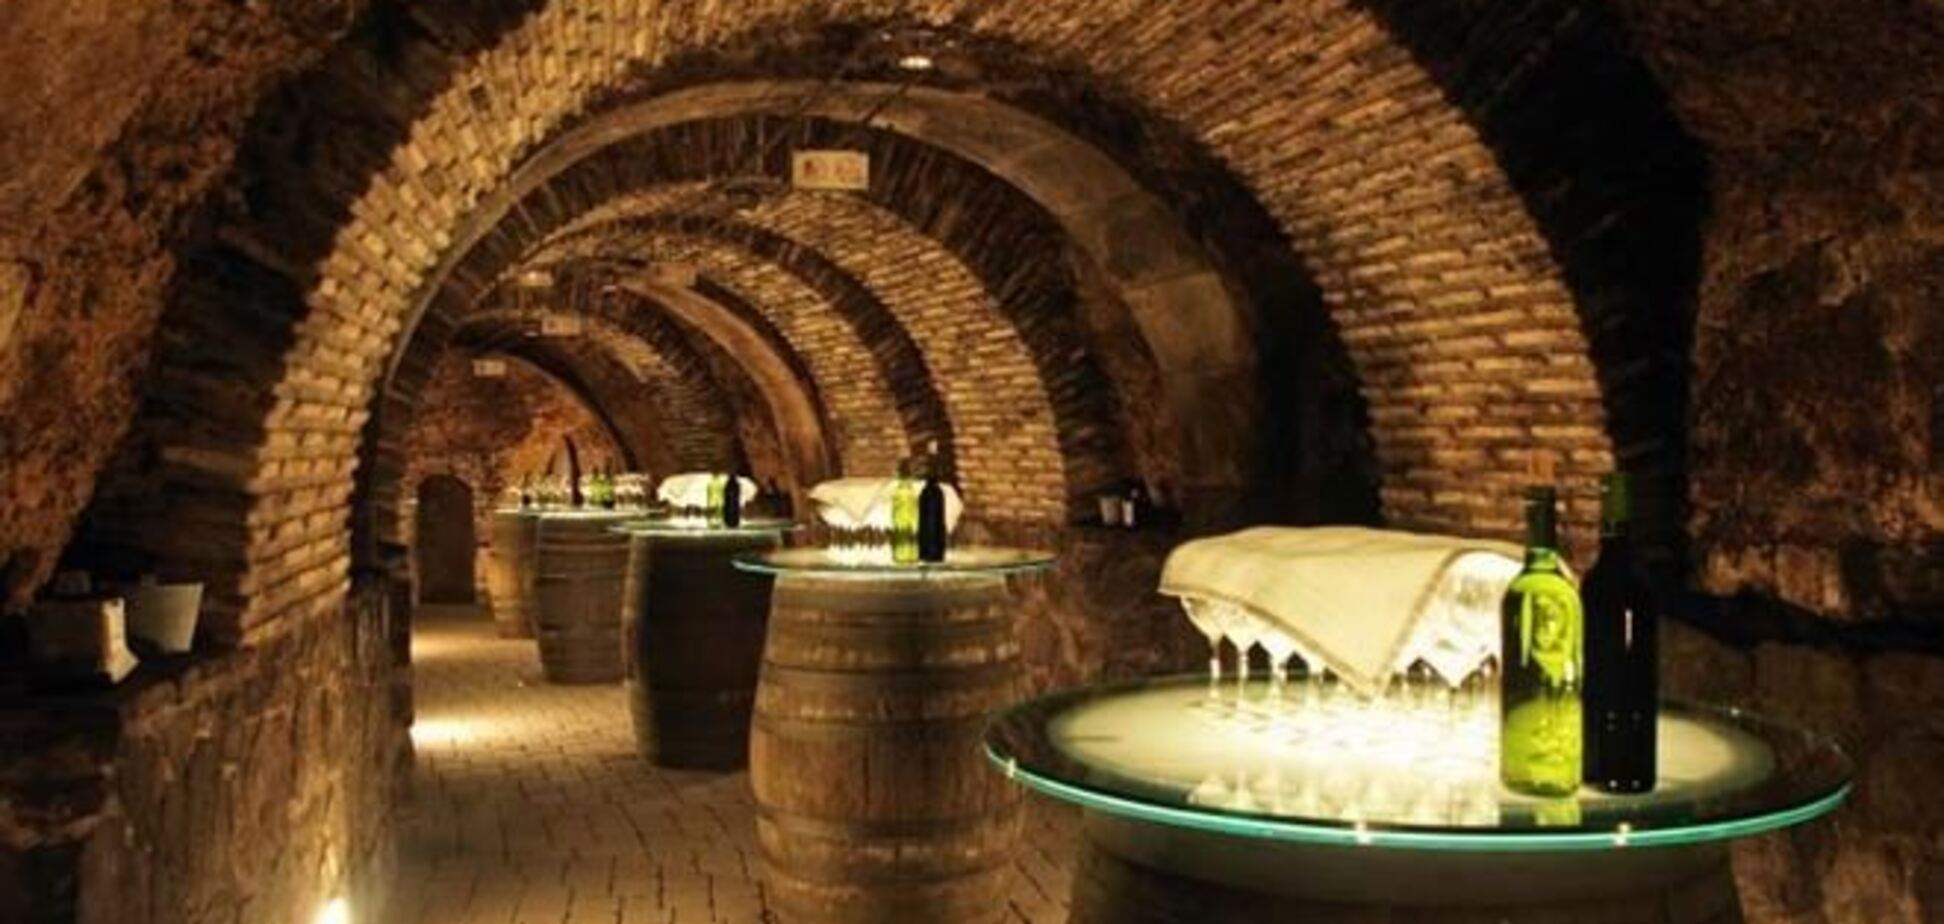 Херес-де-ла-Фронтера стал европейской столицей вина 